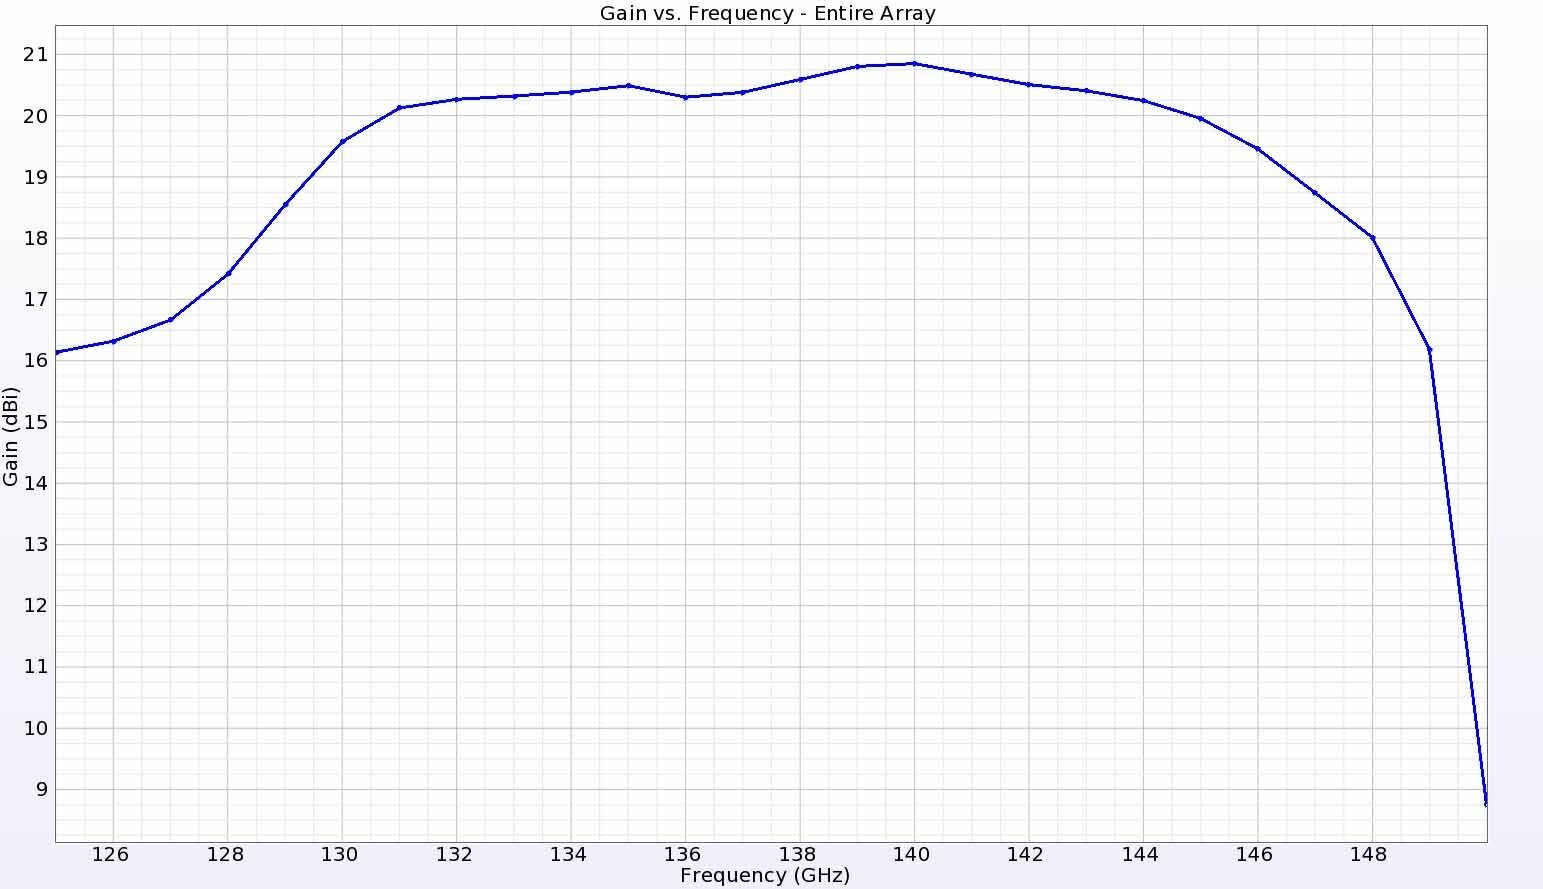 図19：真上の点におけるアレイの利得は、エッジの17.5dBiから140GHzのピーク21dBiまで滑らかに変化している。